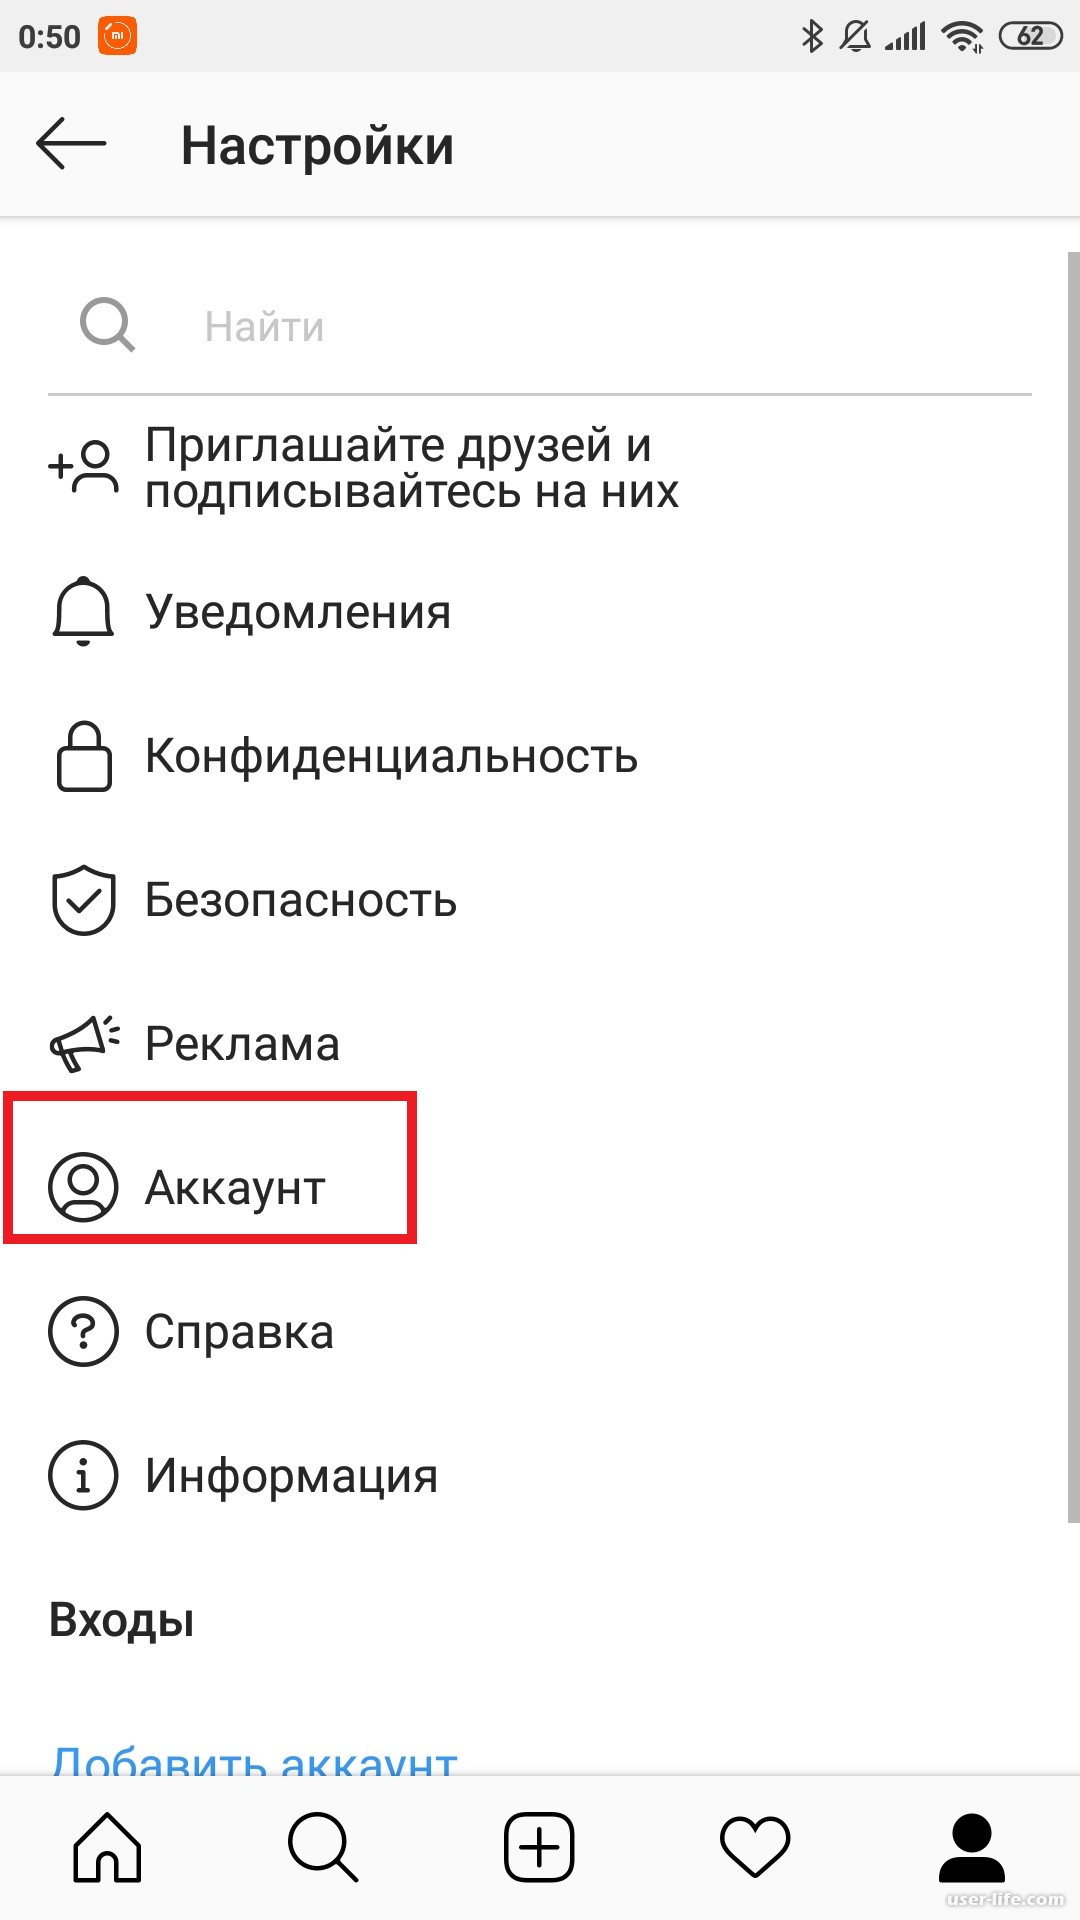 Телеграмм на английском языке как поменять на русский на андроиде фото 48